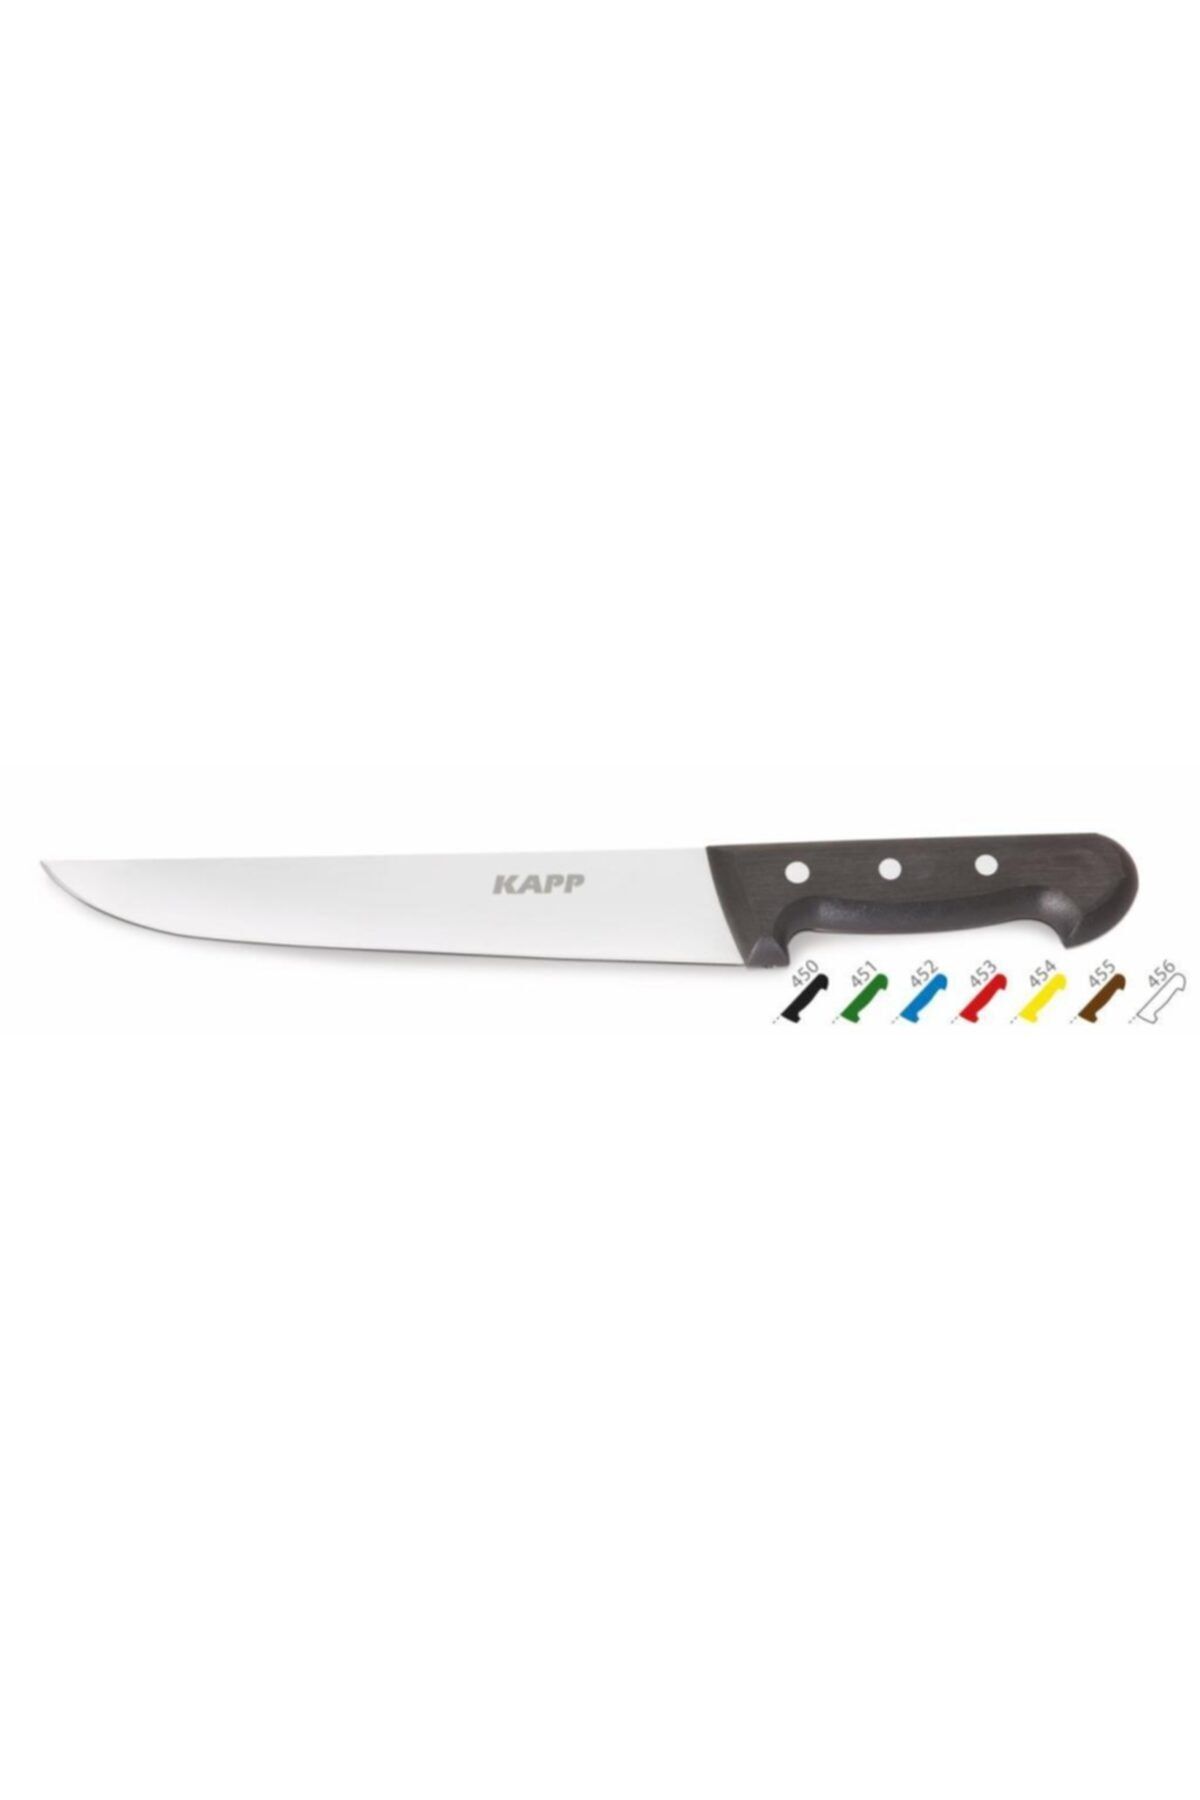 Kapp Mutfak Bıçağı – Beyaz 12,5 Cm